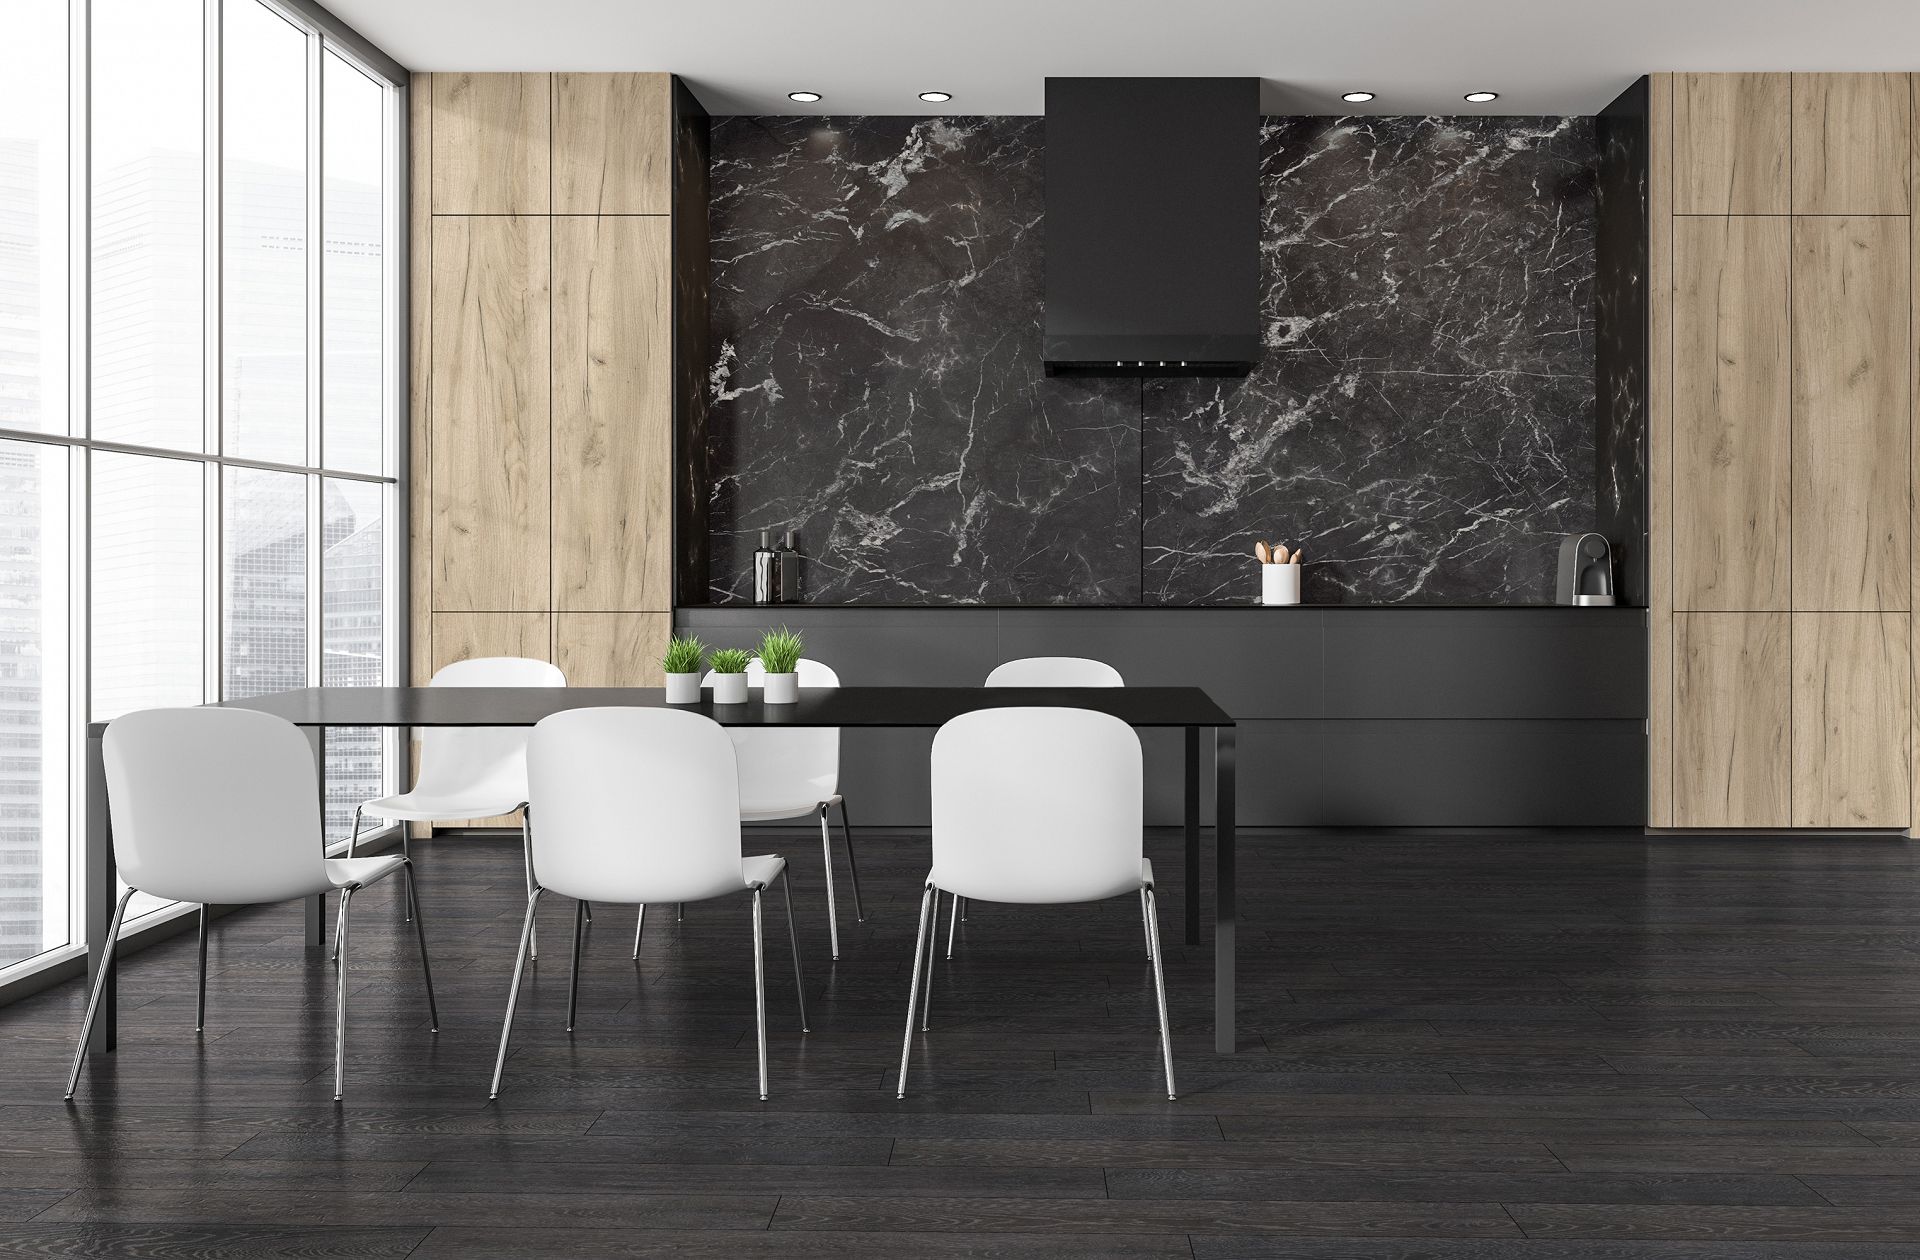 Stwórz harmonijną przestrzeń z panelem podłogowym Dąb Bedrock 5541 - unikalny design i solidność, które sprawią, że Twój dom będzie emanować nowoczesnym wdziękiem